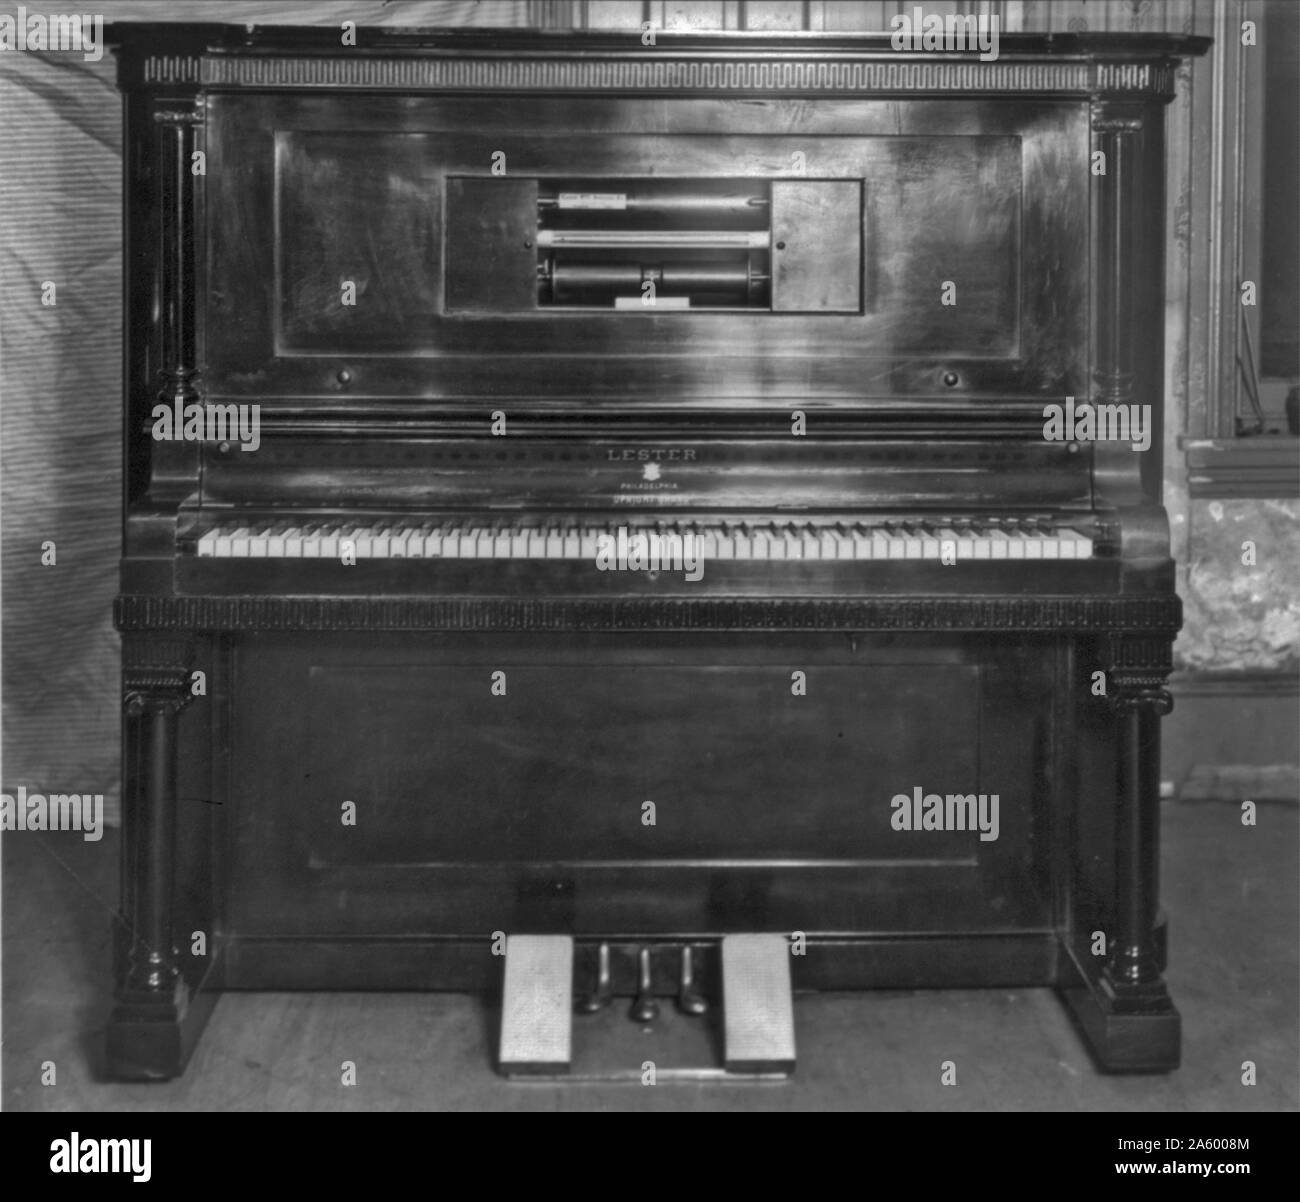 Un piano silencieux est un piano acoustique où il y a une option pour désactiver les cordes en arrêtant les marteaux de substitution entre eux. Un piano silencieux est conçu pour la pratique silencieuse Banque D'Images